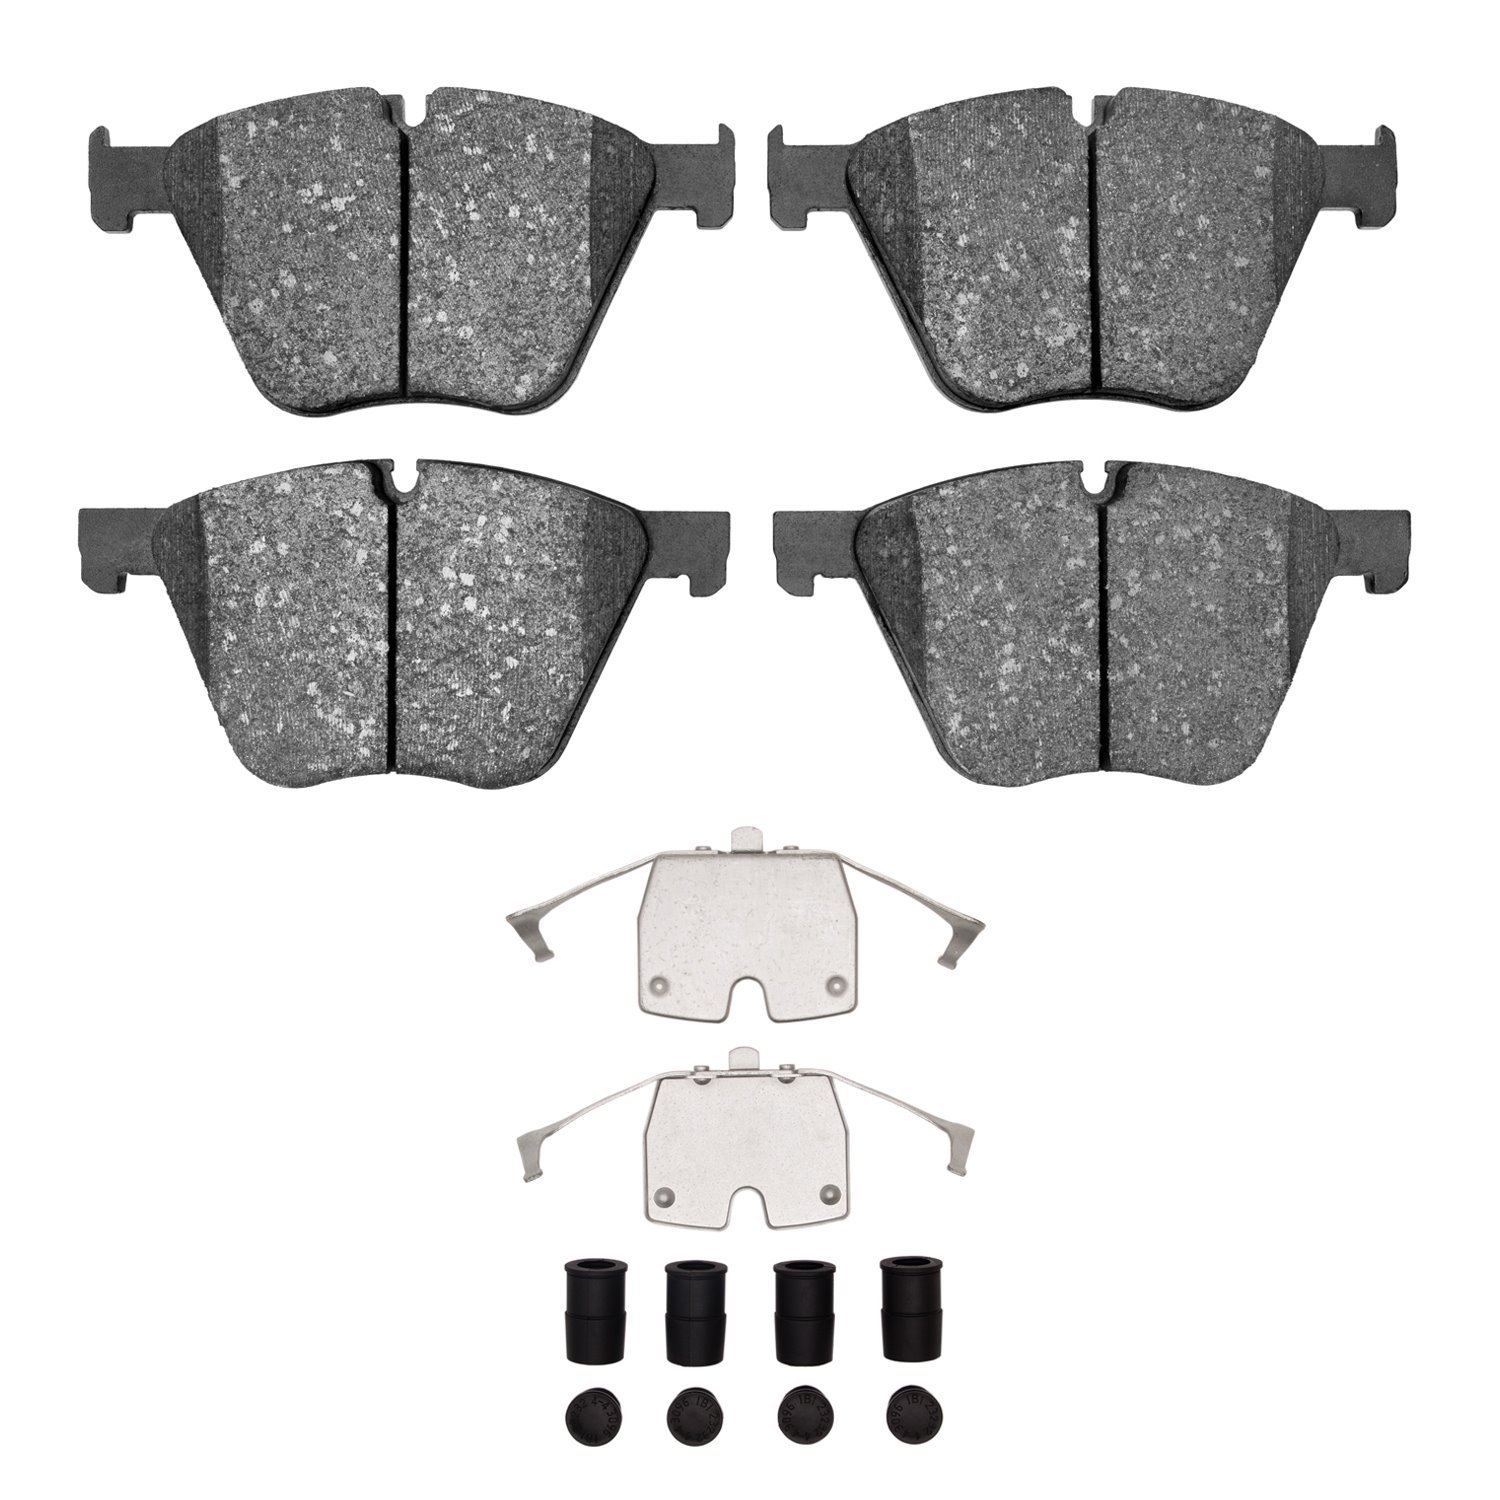 Euro Ceramic Brake Pads & Hardware Kit, 2010-2019 BMW, Position: Front